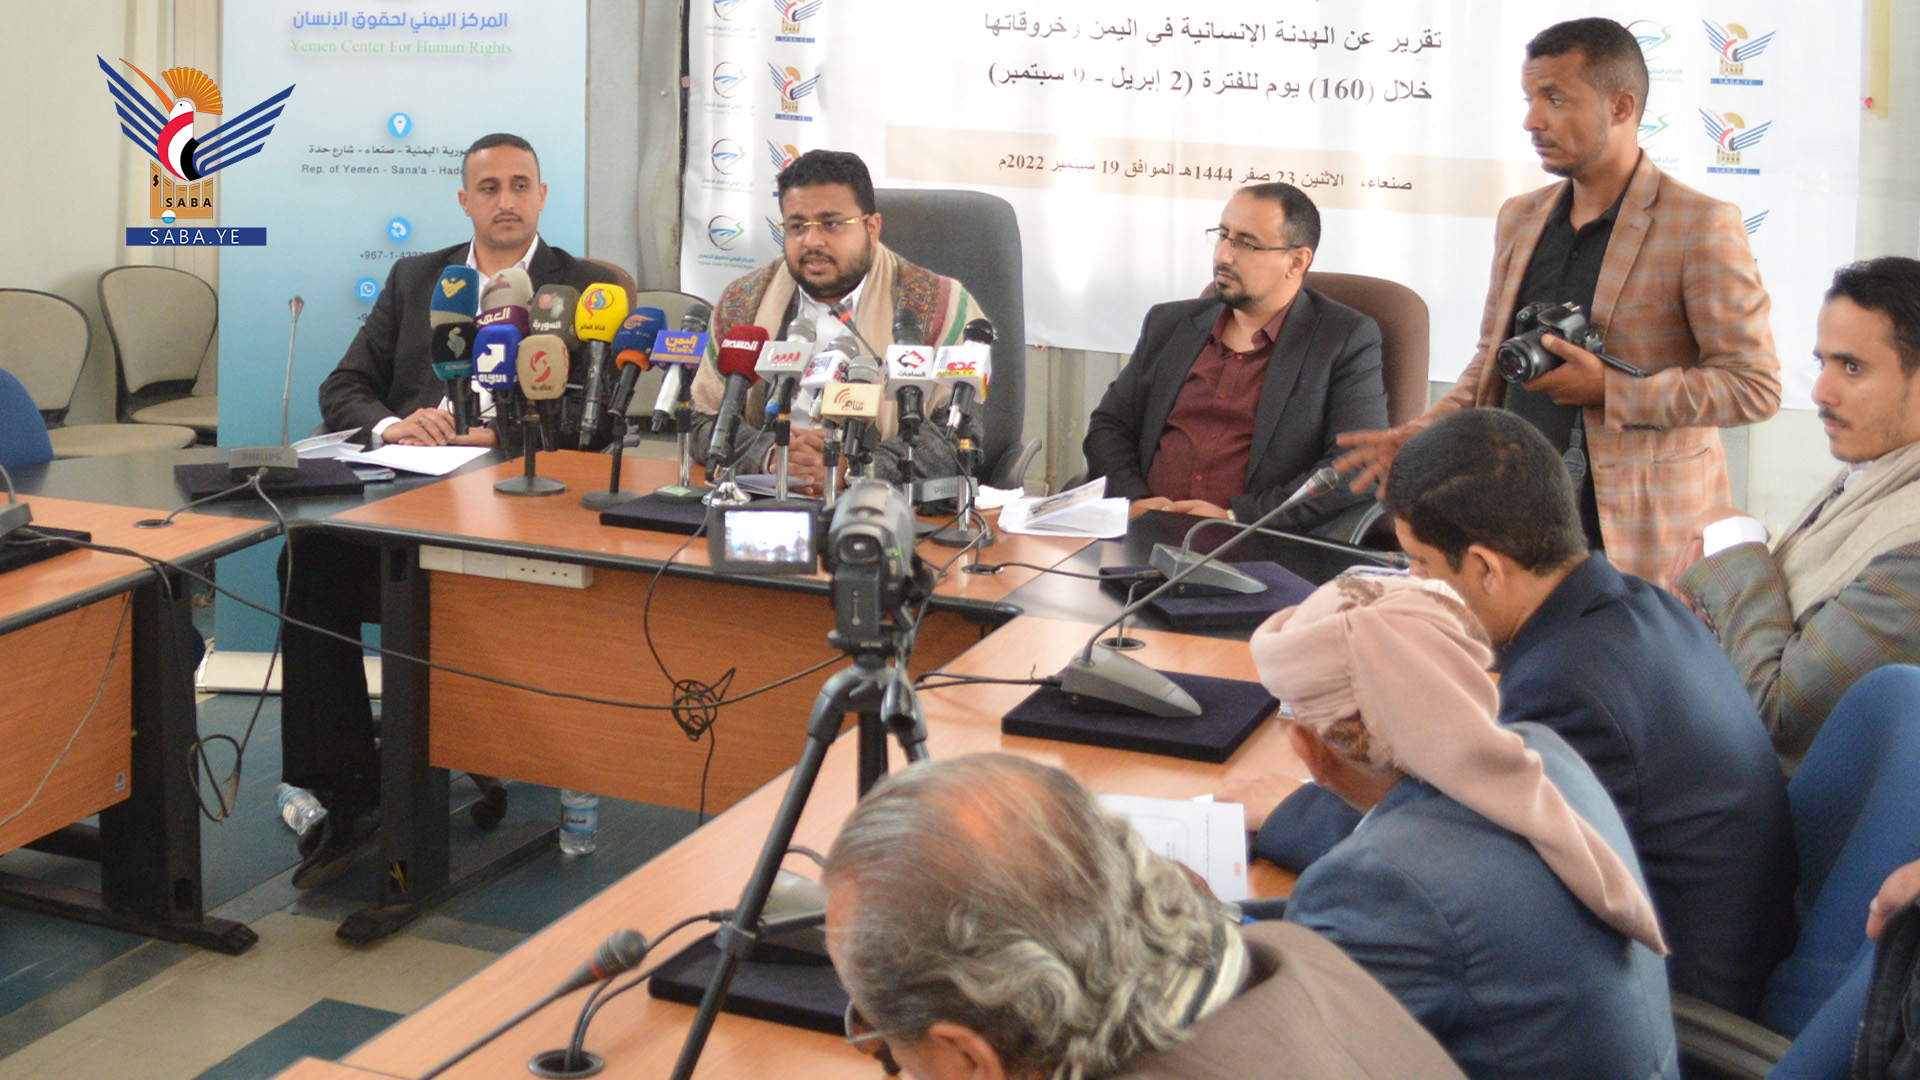 المركز اليمني لحقوق الإنسان وبالتعاون مع وكالة الأنباء سبأ يعقد المؤتمر الصحفي لإصدار تقرير عن الهدنة المؤقتة وخروقات العدوان خلال 160 يوما 